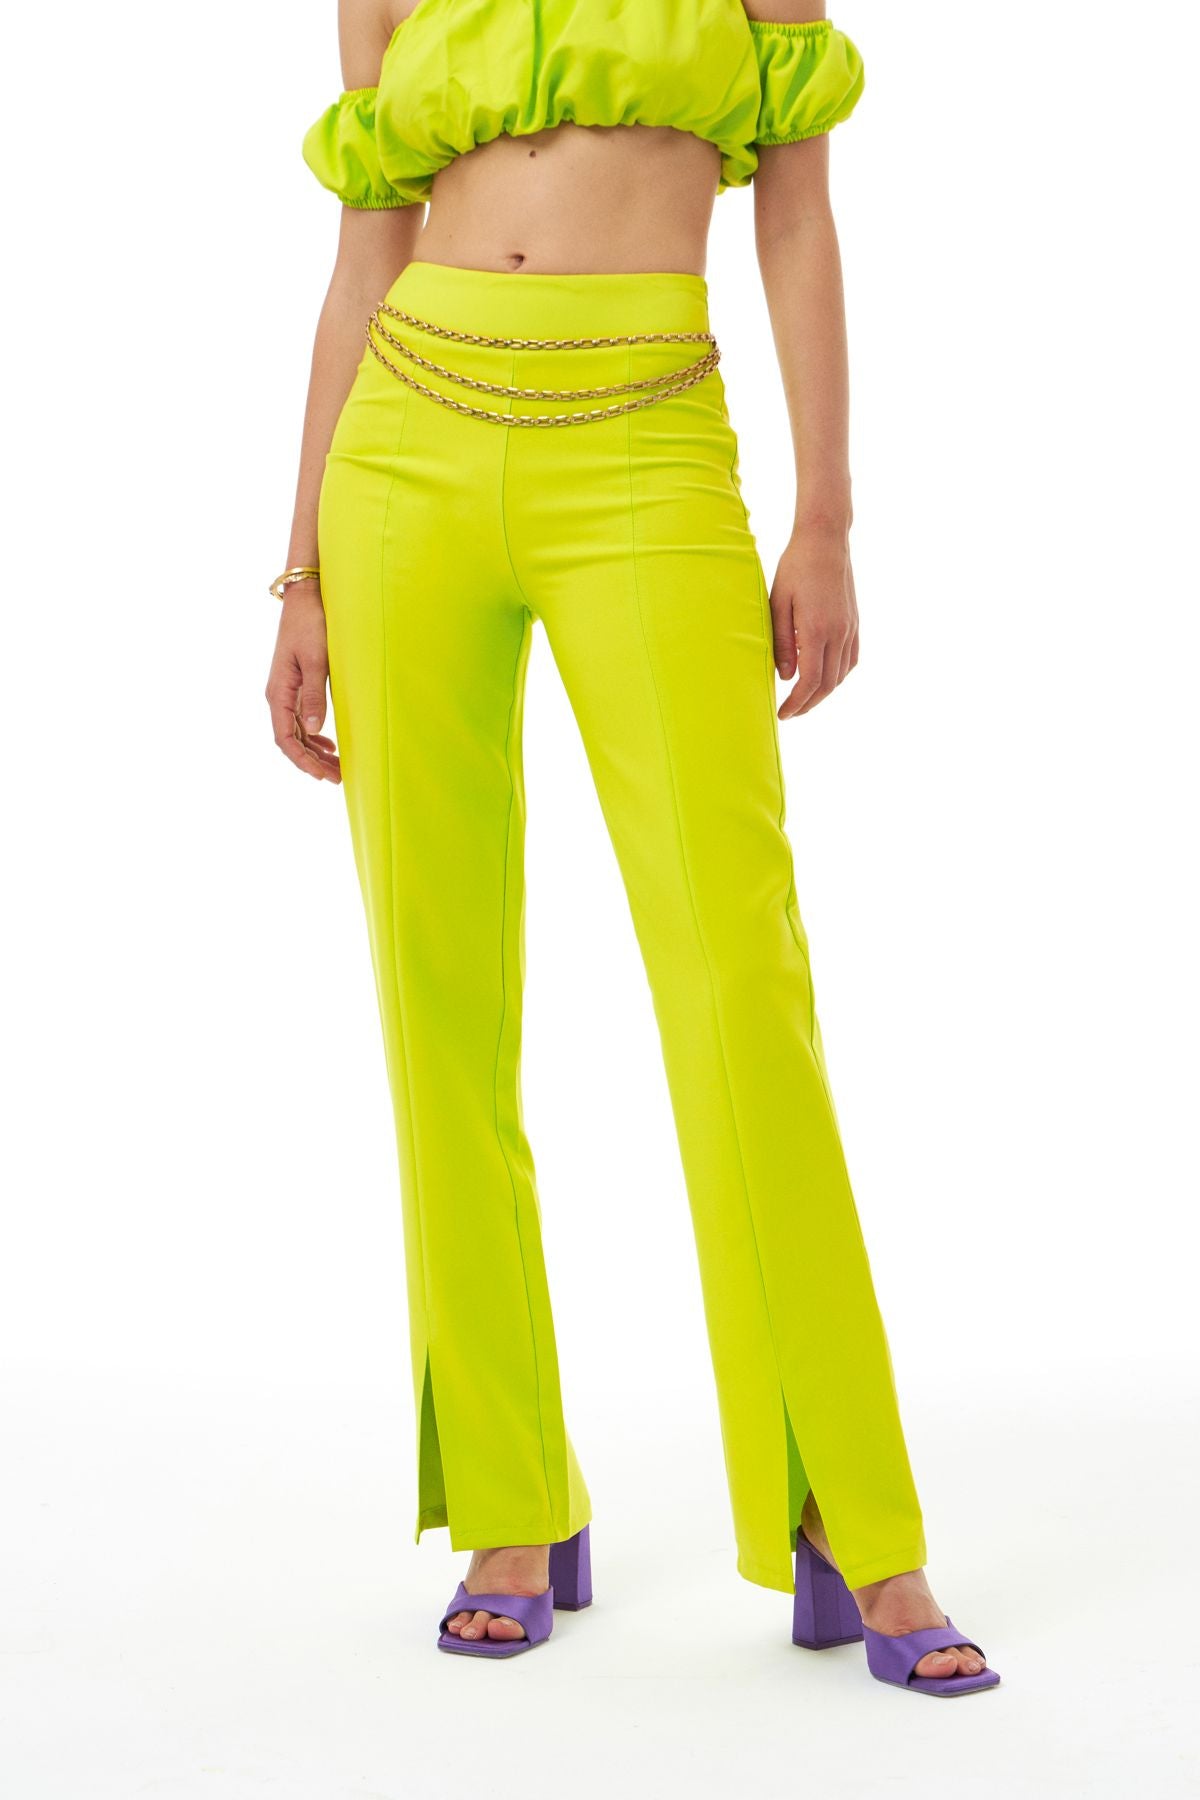 Yüksek Bel Paçası Yırtmaçlı Pantolon Neon Yeşil